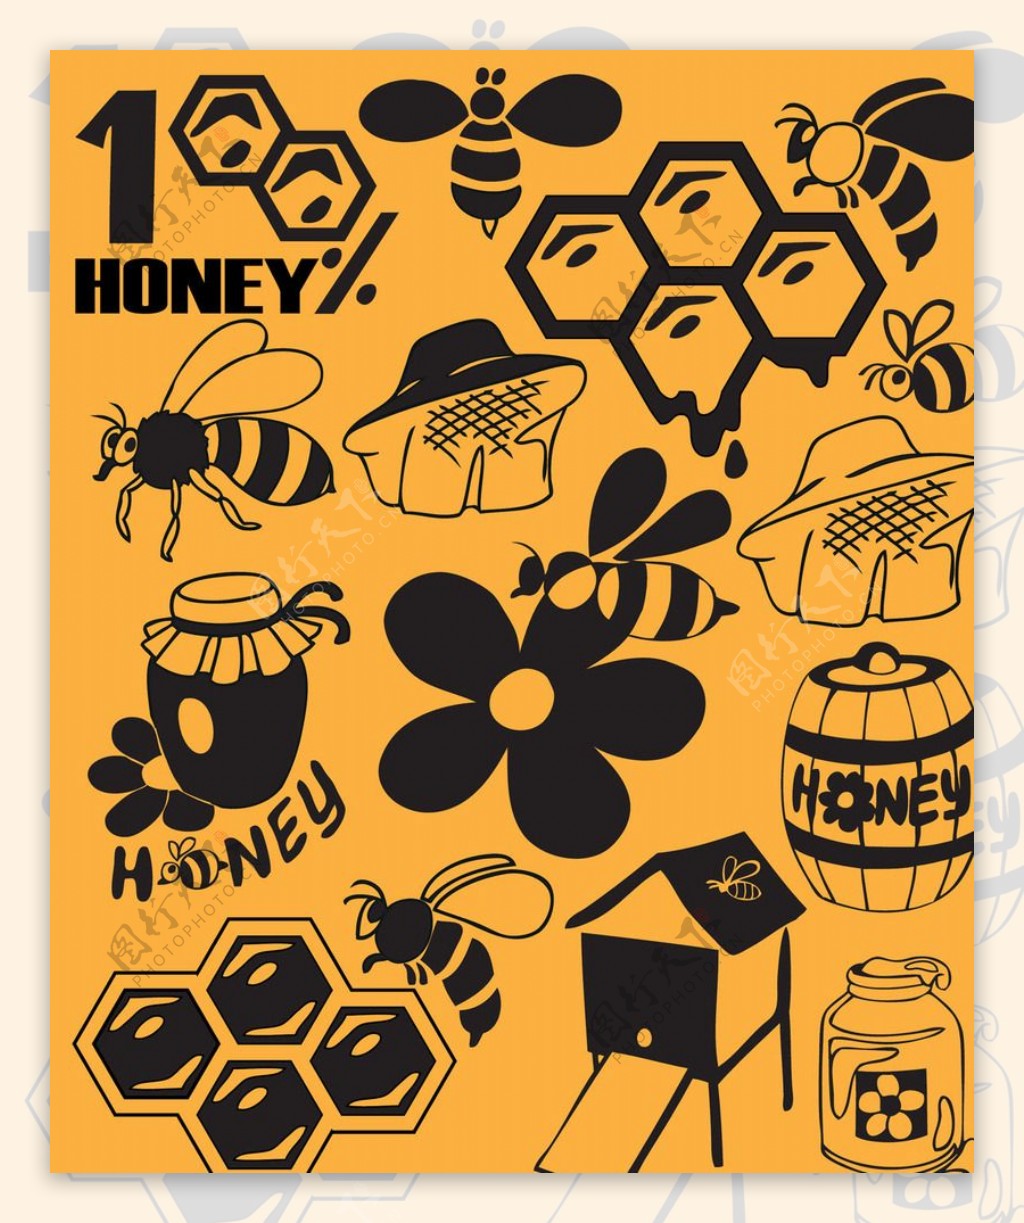 蜂蜜蜂蜜设计图片